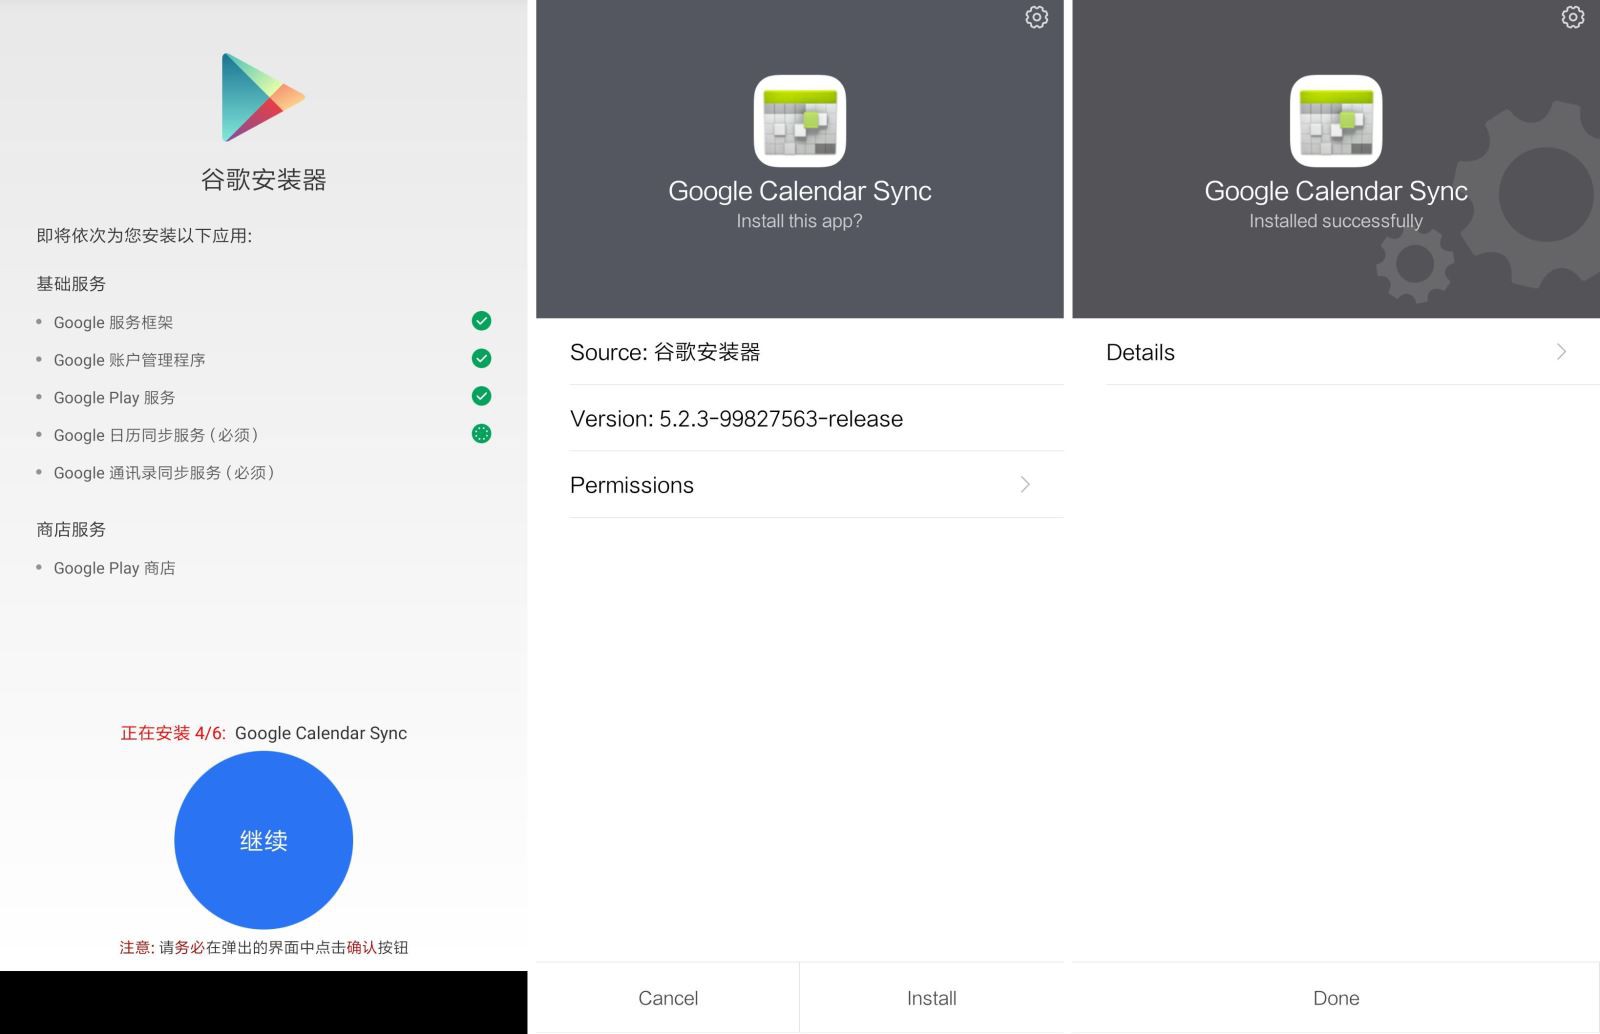 Hướng dẫn cài Google Play Store cho máy Xiaomi